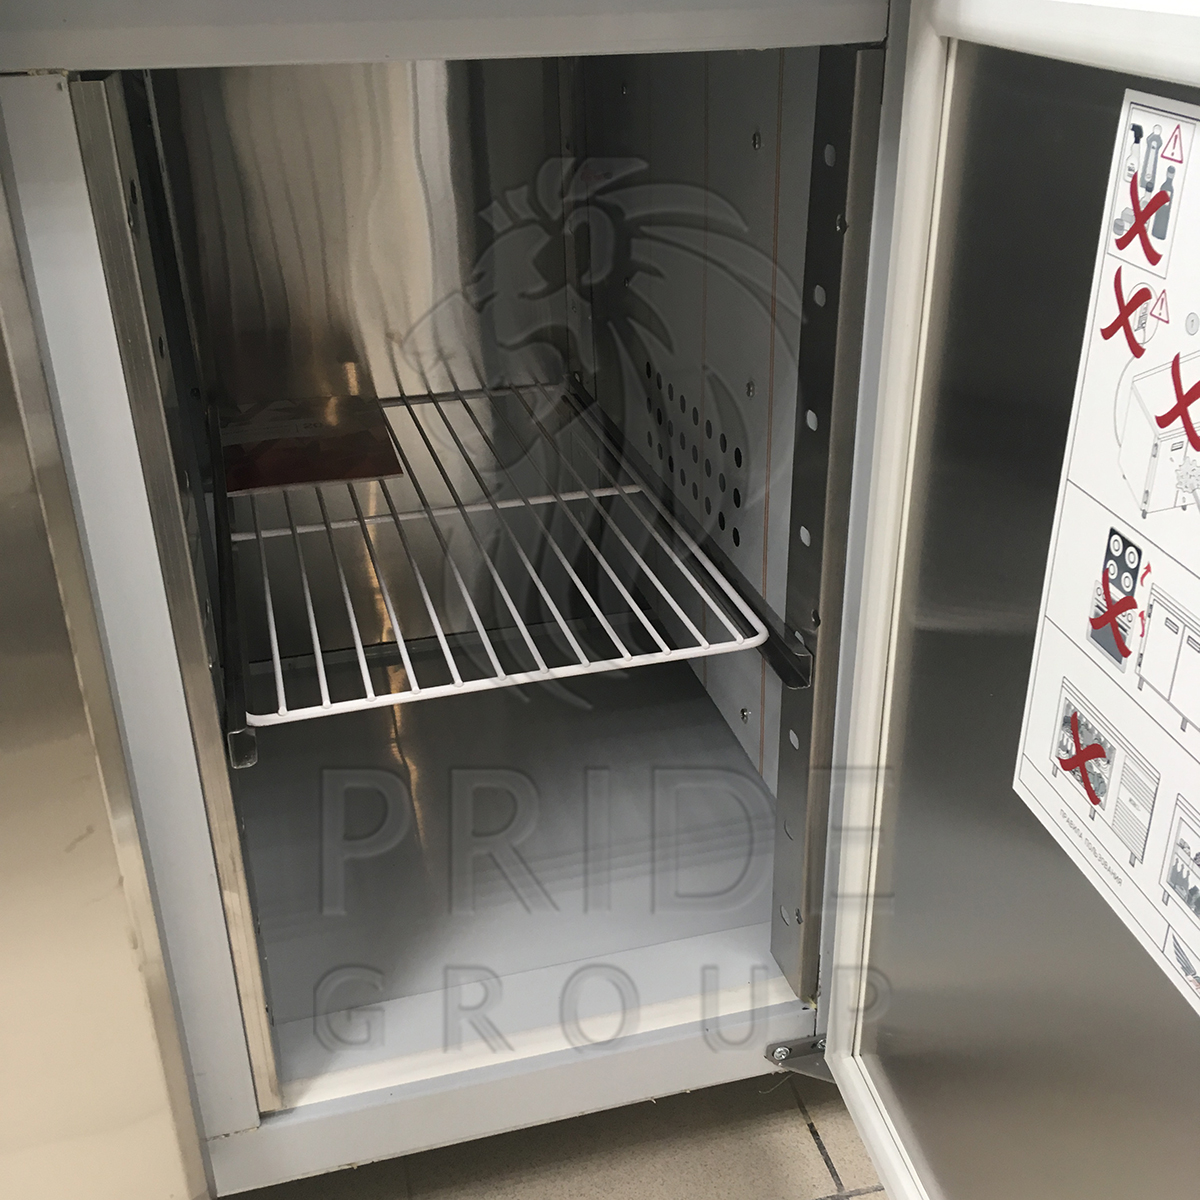 Стол холодильный Finist СХС-700-1/2 1400х700х850 мм